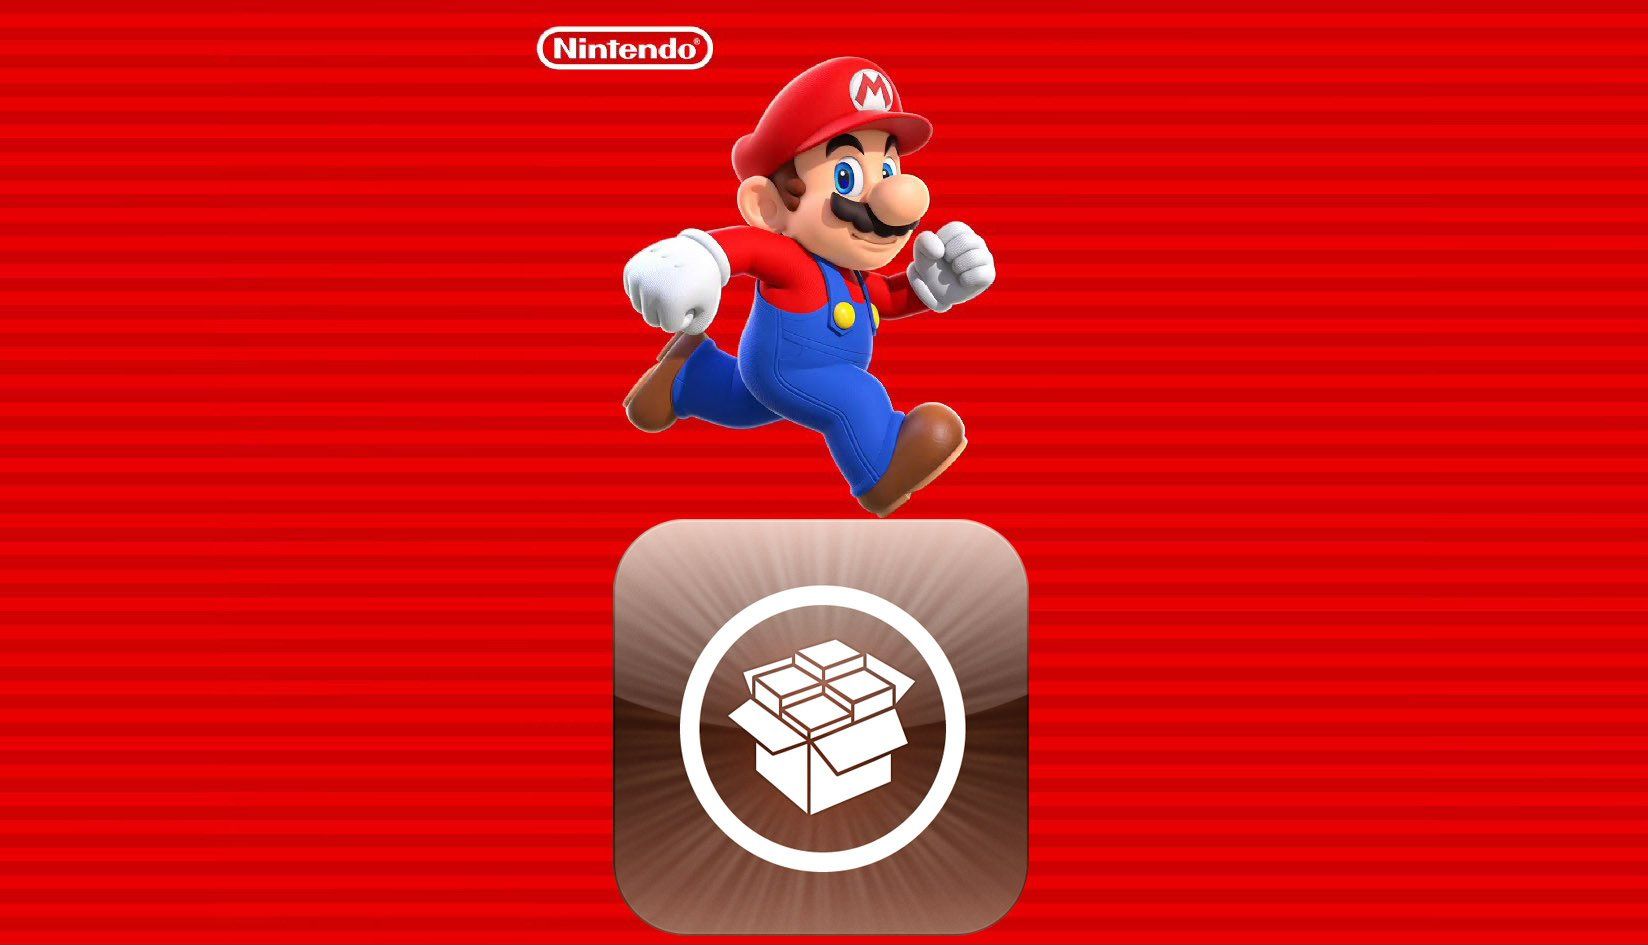 Comment jouer à Super Mario Run sur un iPhone jailbreaké ?